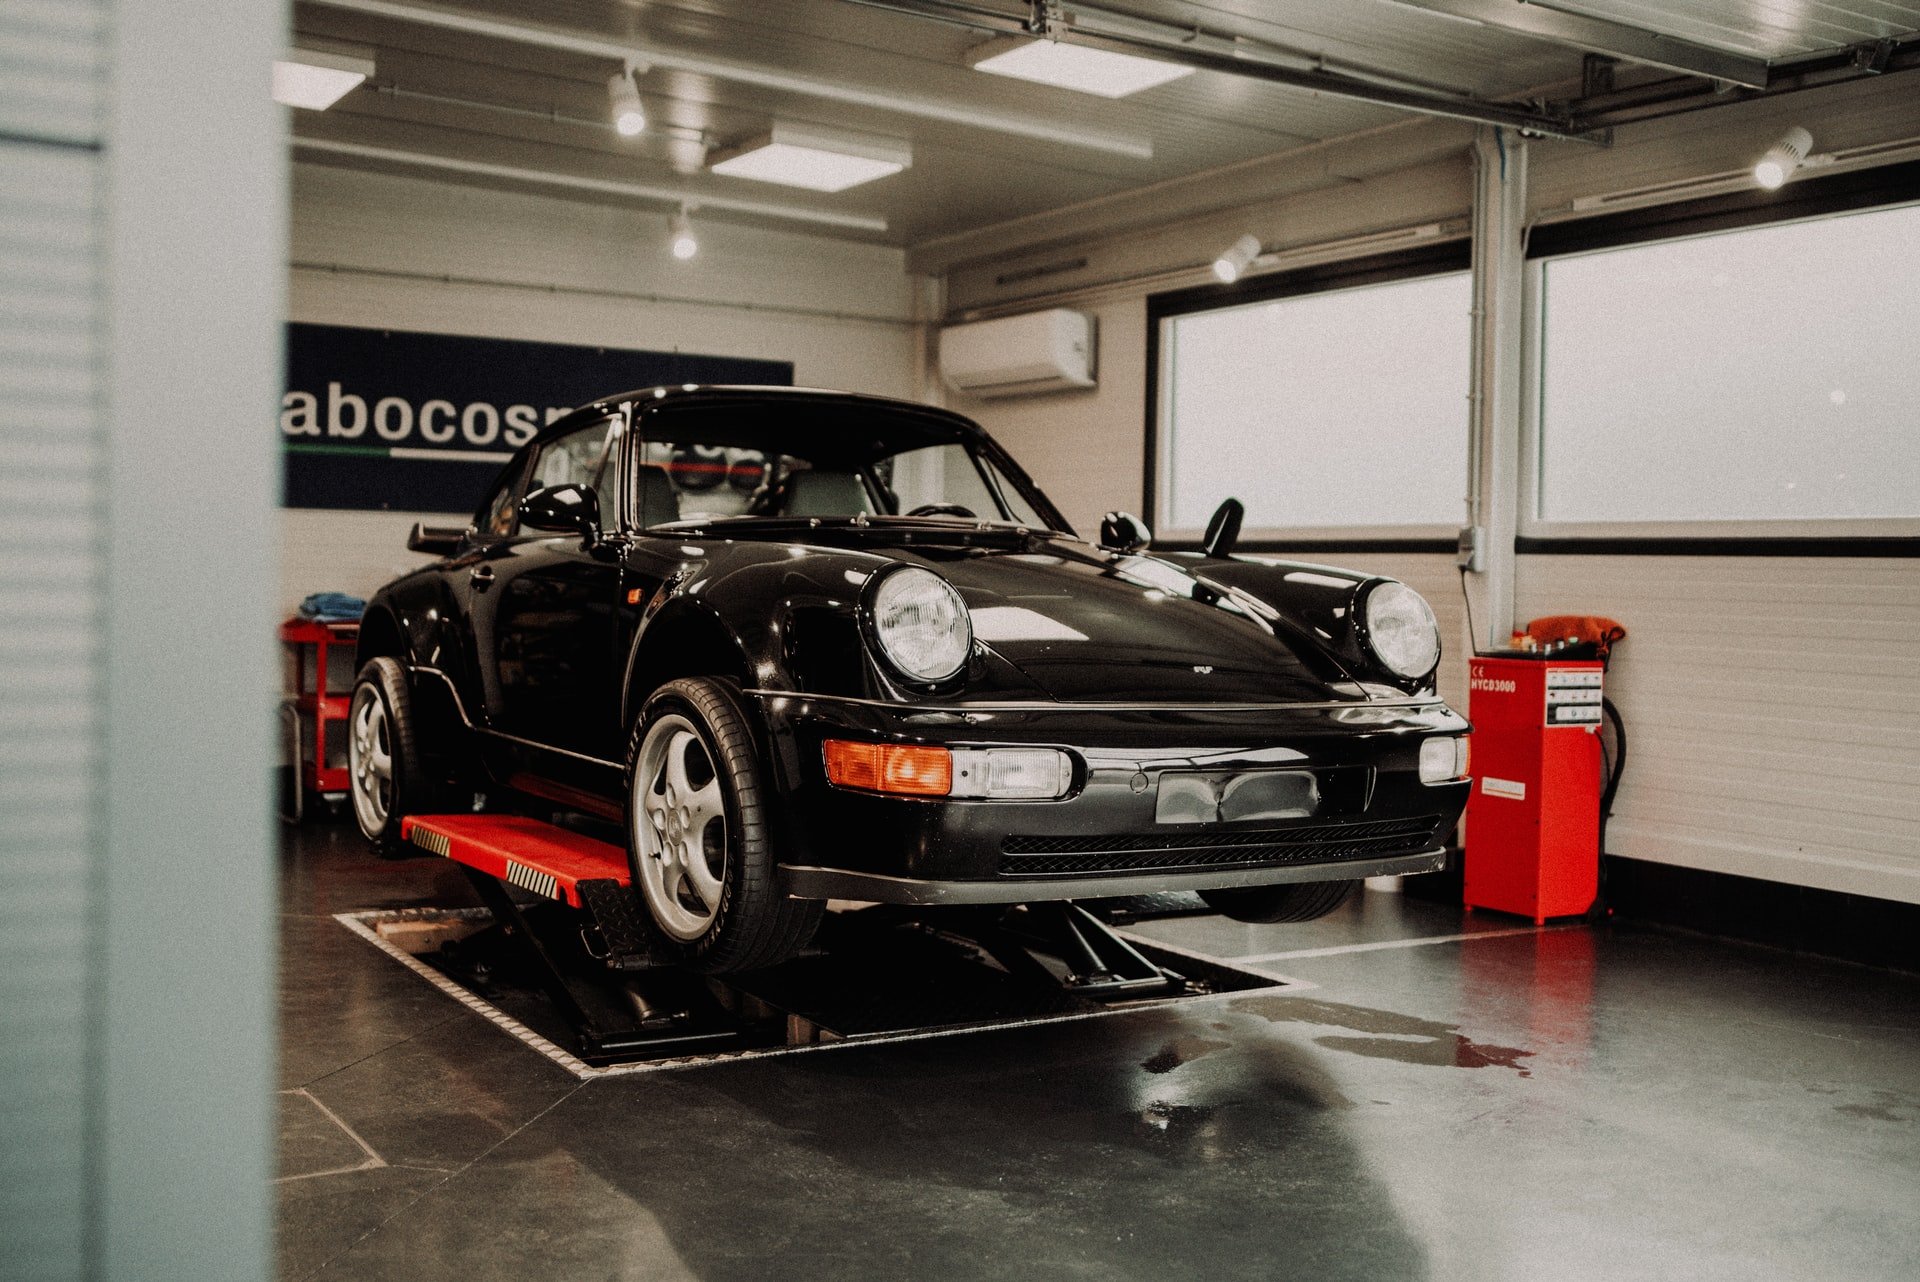 Porsche on a lift in the garage